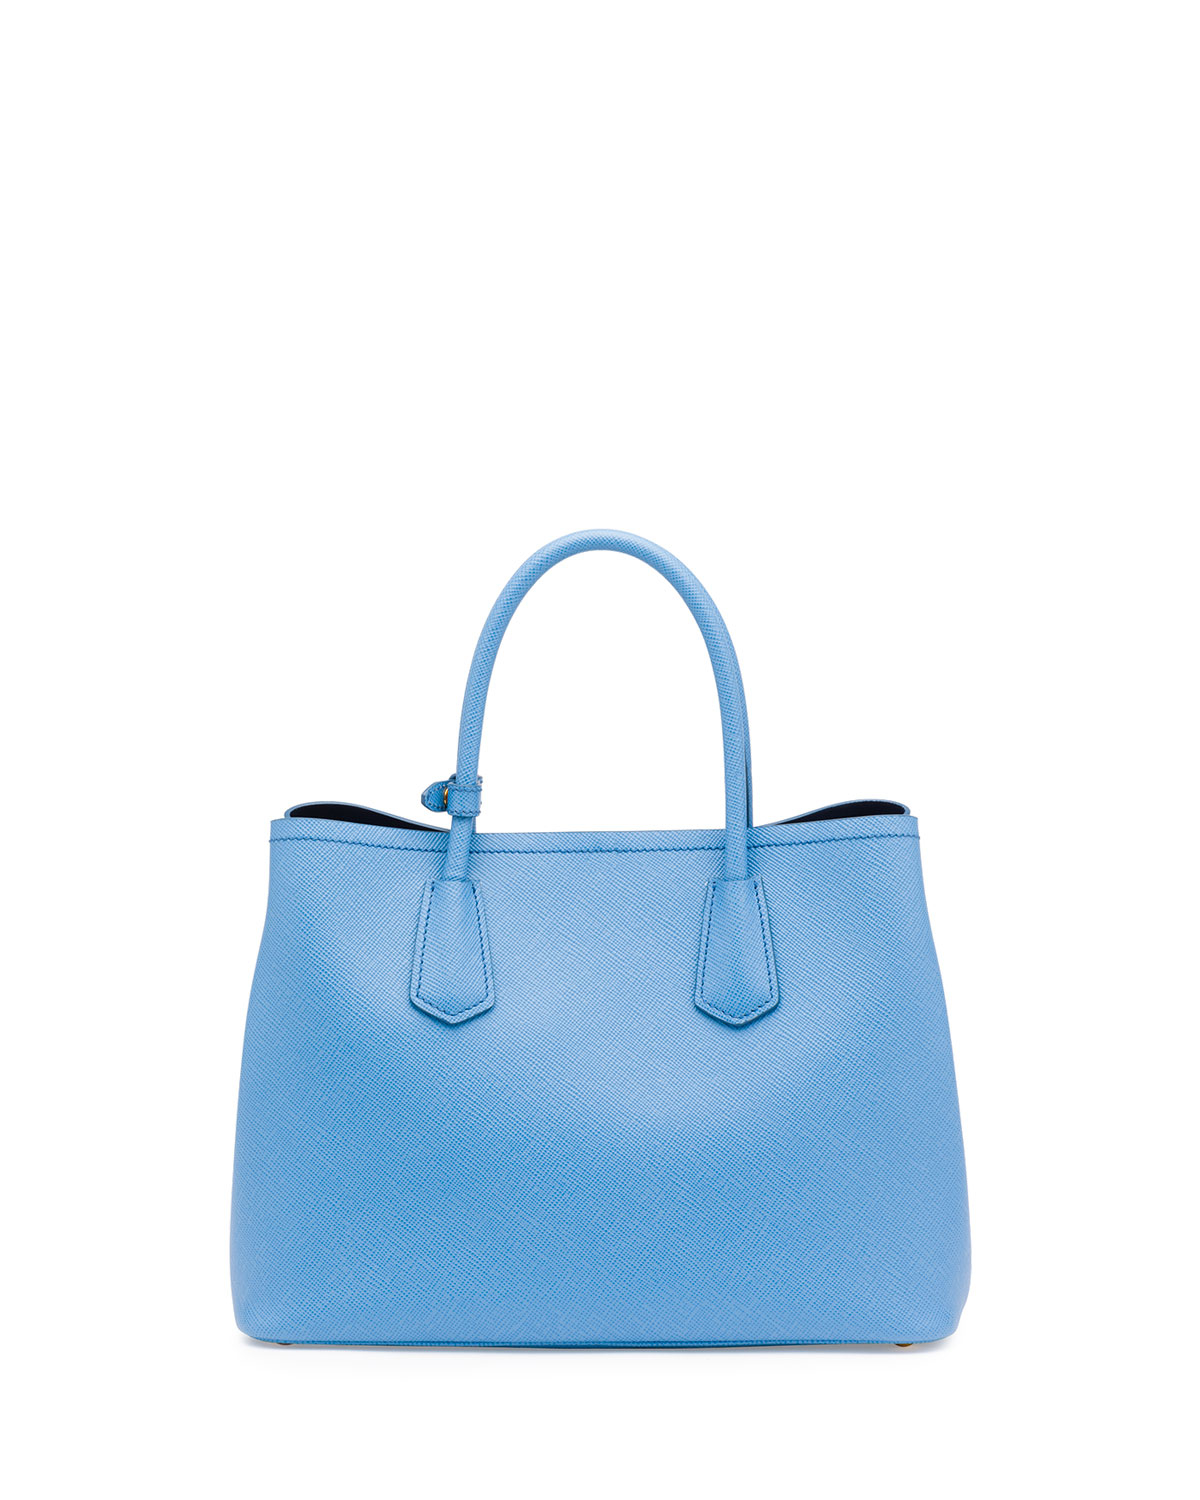 prada saffiano lux tote light pink - Prada Saffiano Cuir Double Small Tote Bag in Blue (MARE/BLUETTE ...